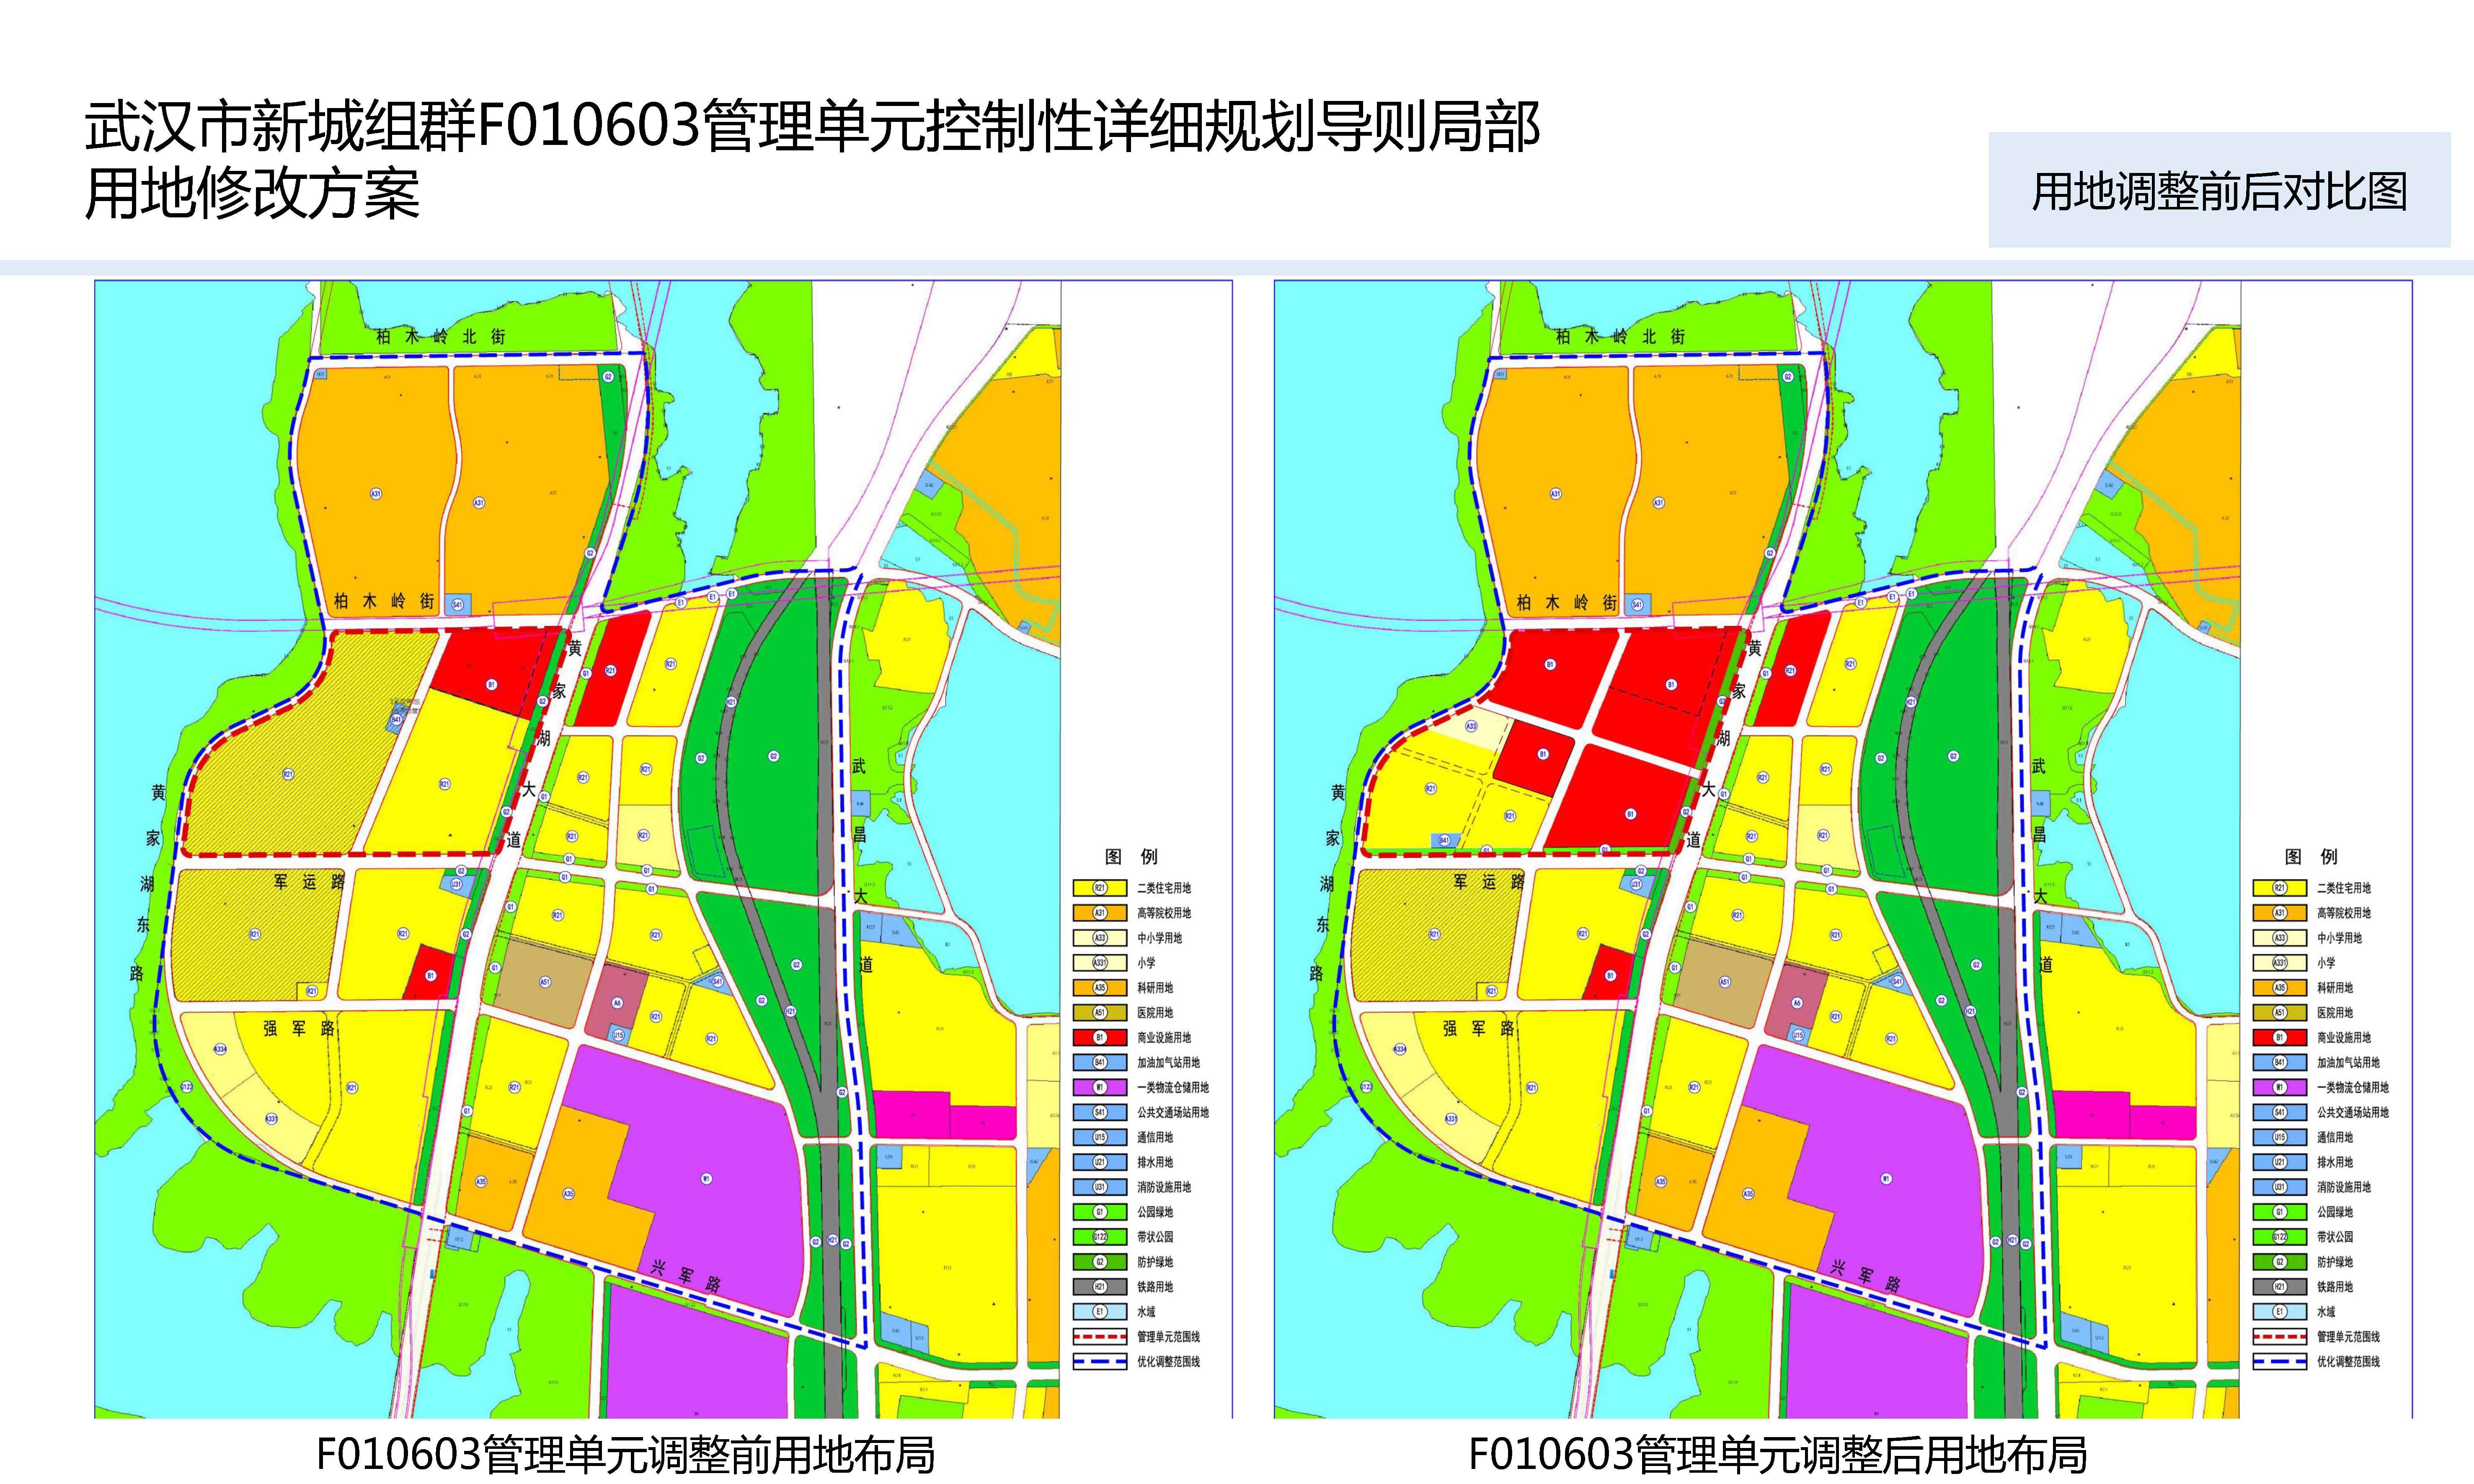 黄家湖地铁小镇用地规划调整最新进展:市规委会已经审查通过控规修改